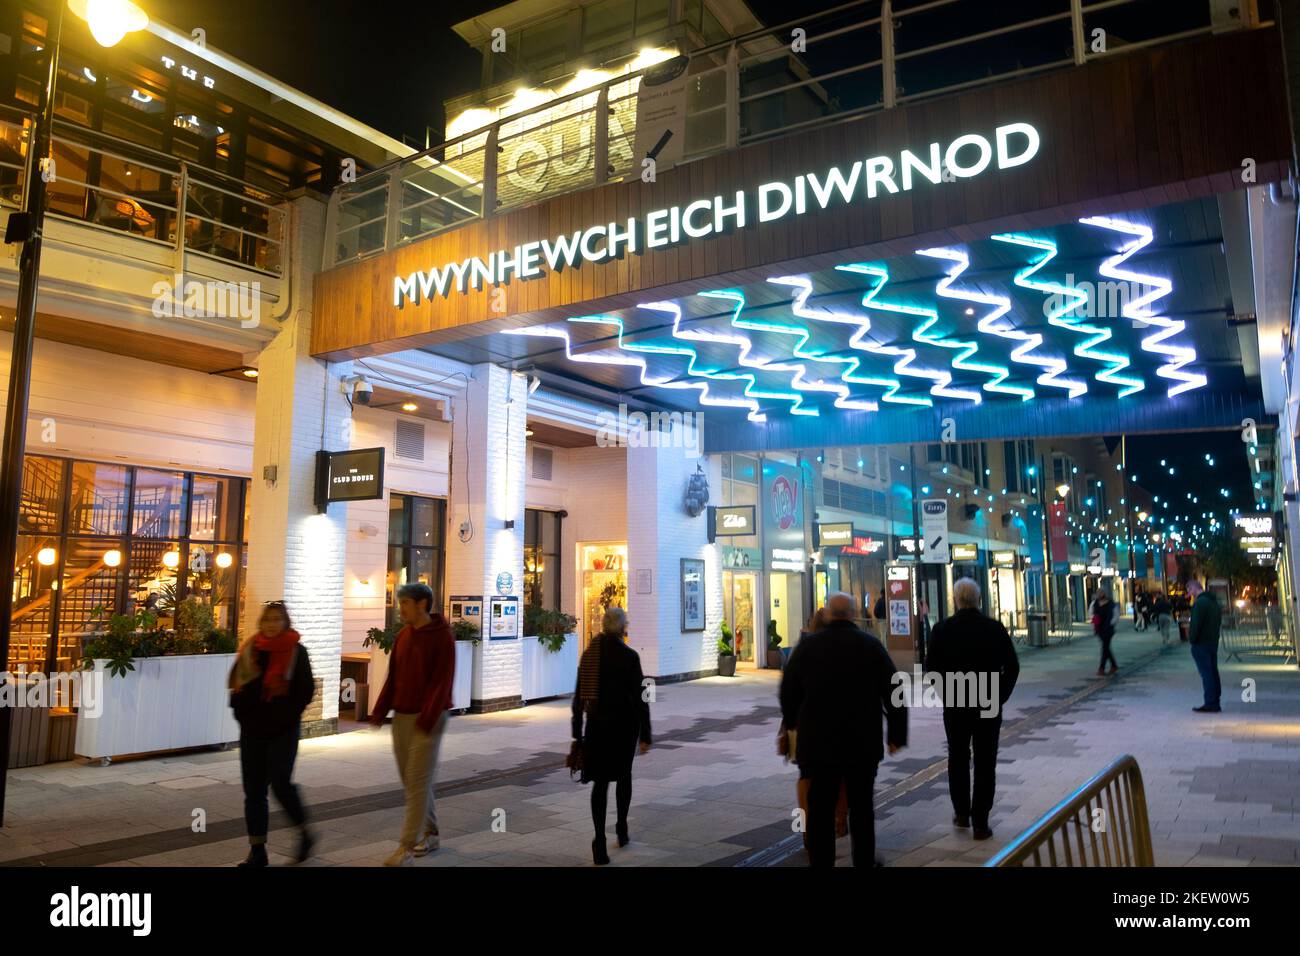 Cardiff Bay Walisisches Sprachschild 'wynhewch eich diwrnod' (Genießen Sie Ihren Tag) Einkaufsviertel Fußgängerzone bei Nacht zu Fuß Cardiff Wales UK 2022 Stockfoto